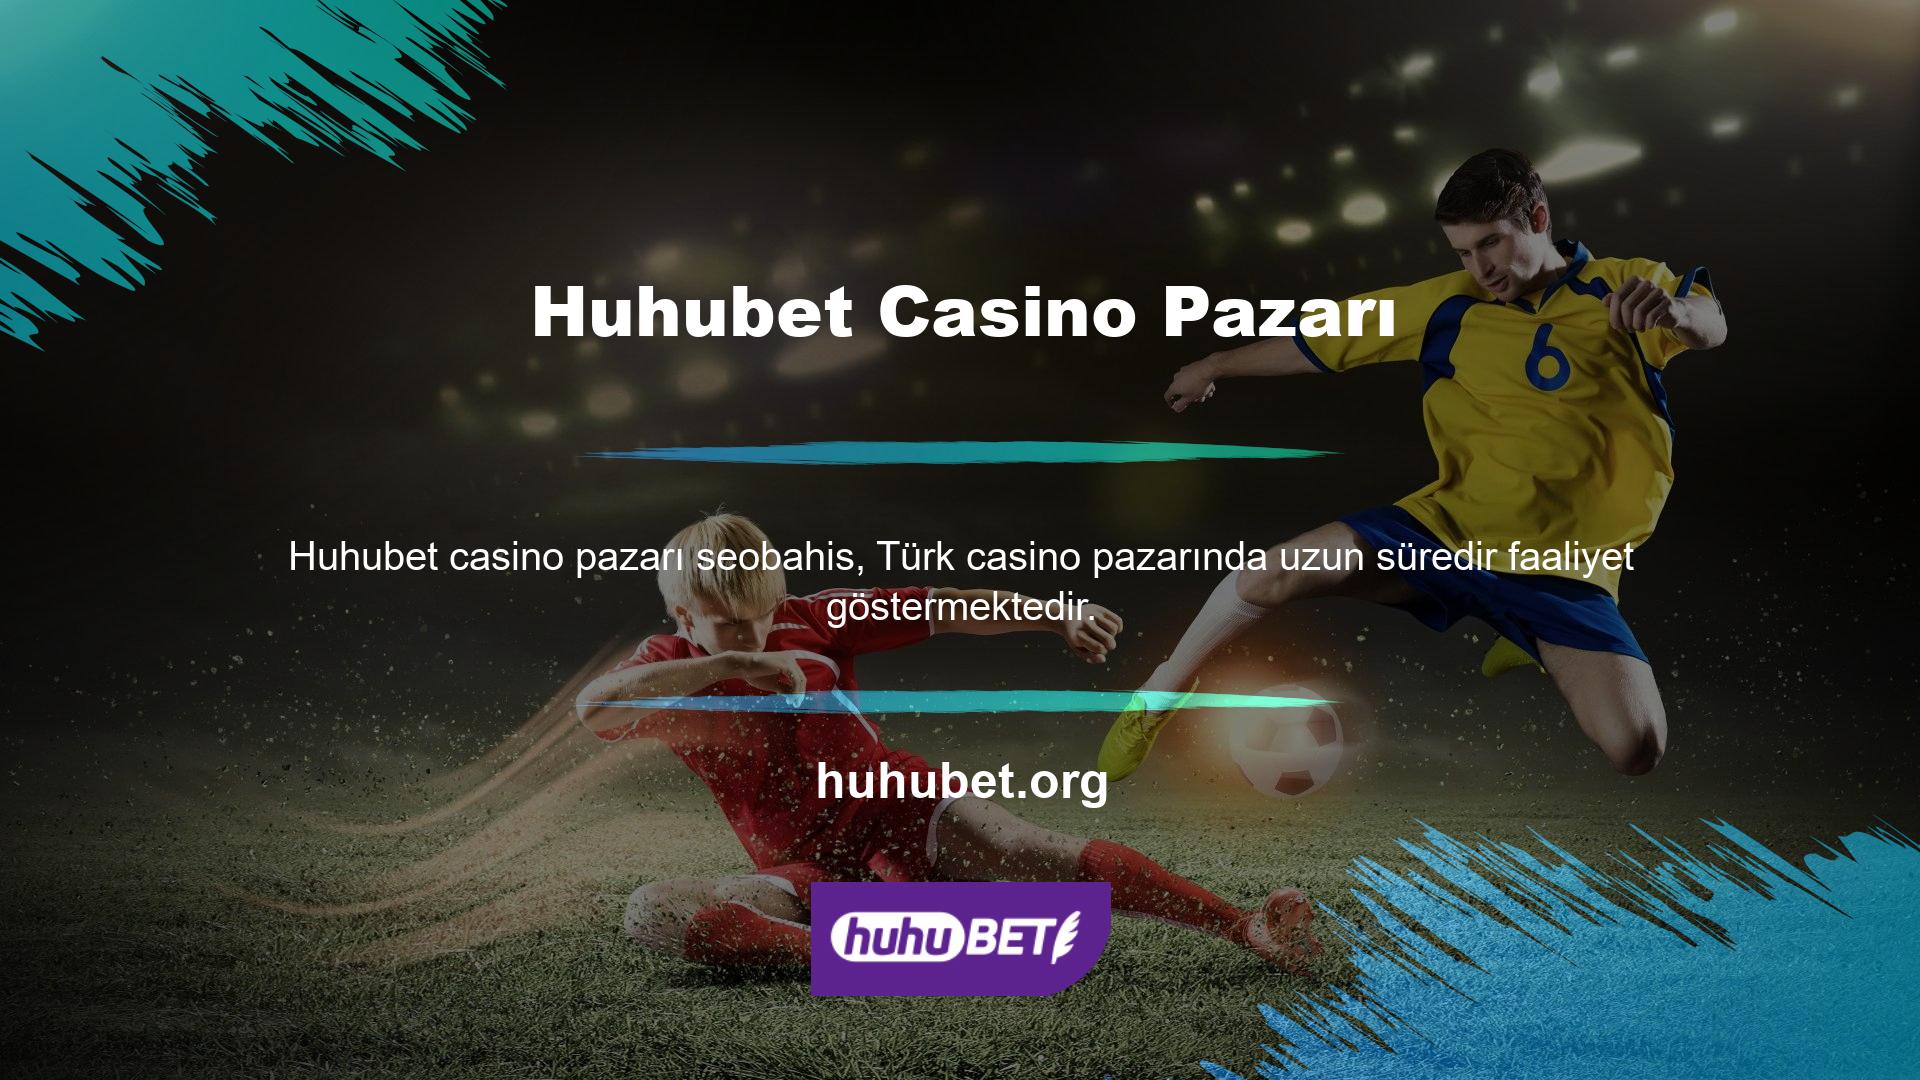 Bahis ve casino oyuncuları bu siteyi çok seviyor ve sitede bu oyuncuların sevdiği bölümler bulunuyor